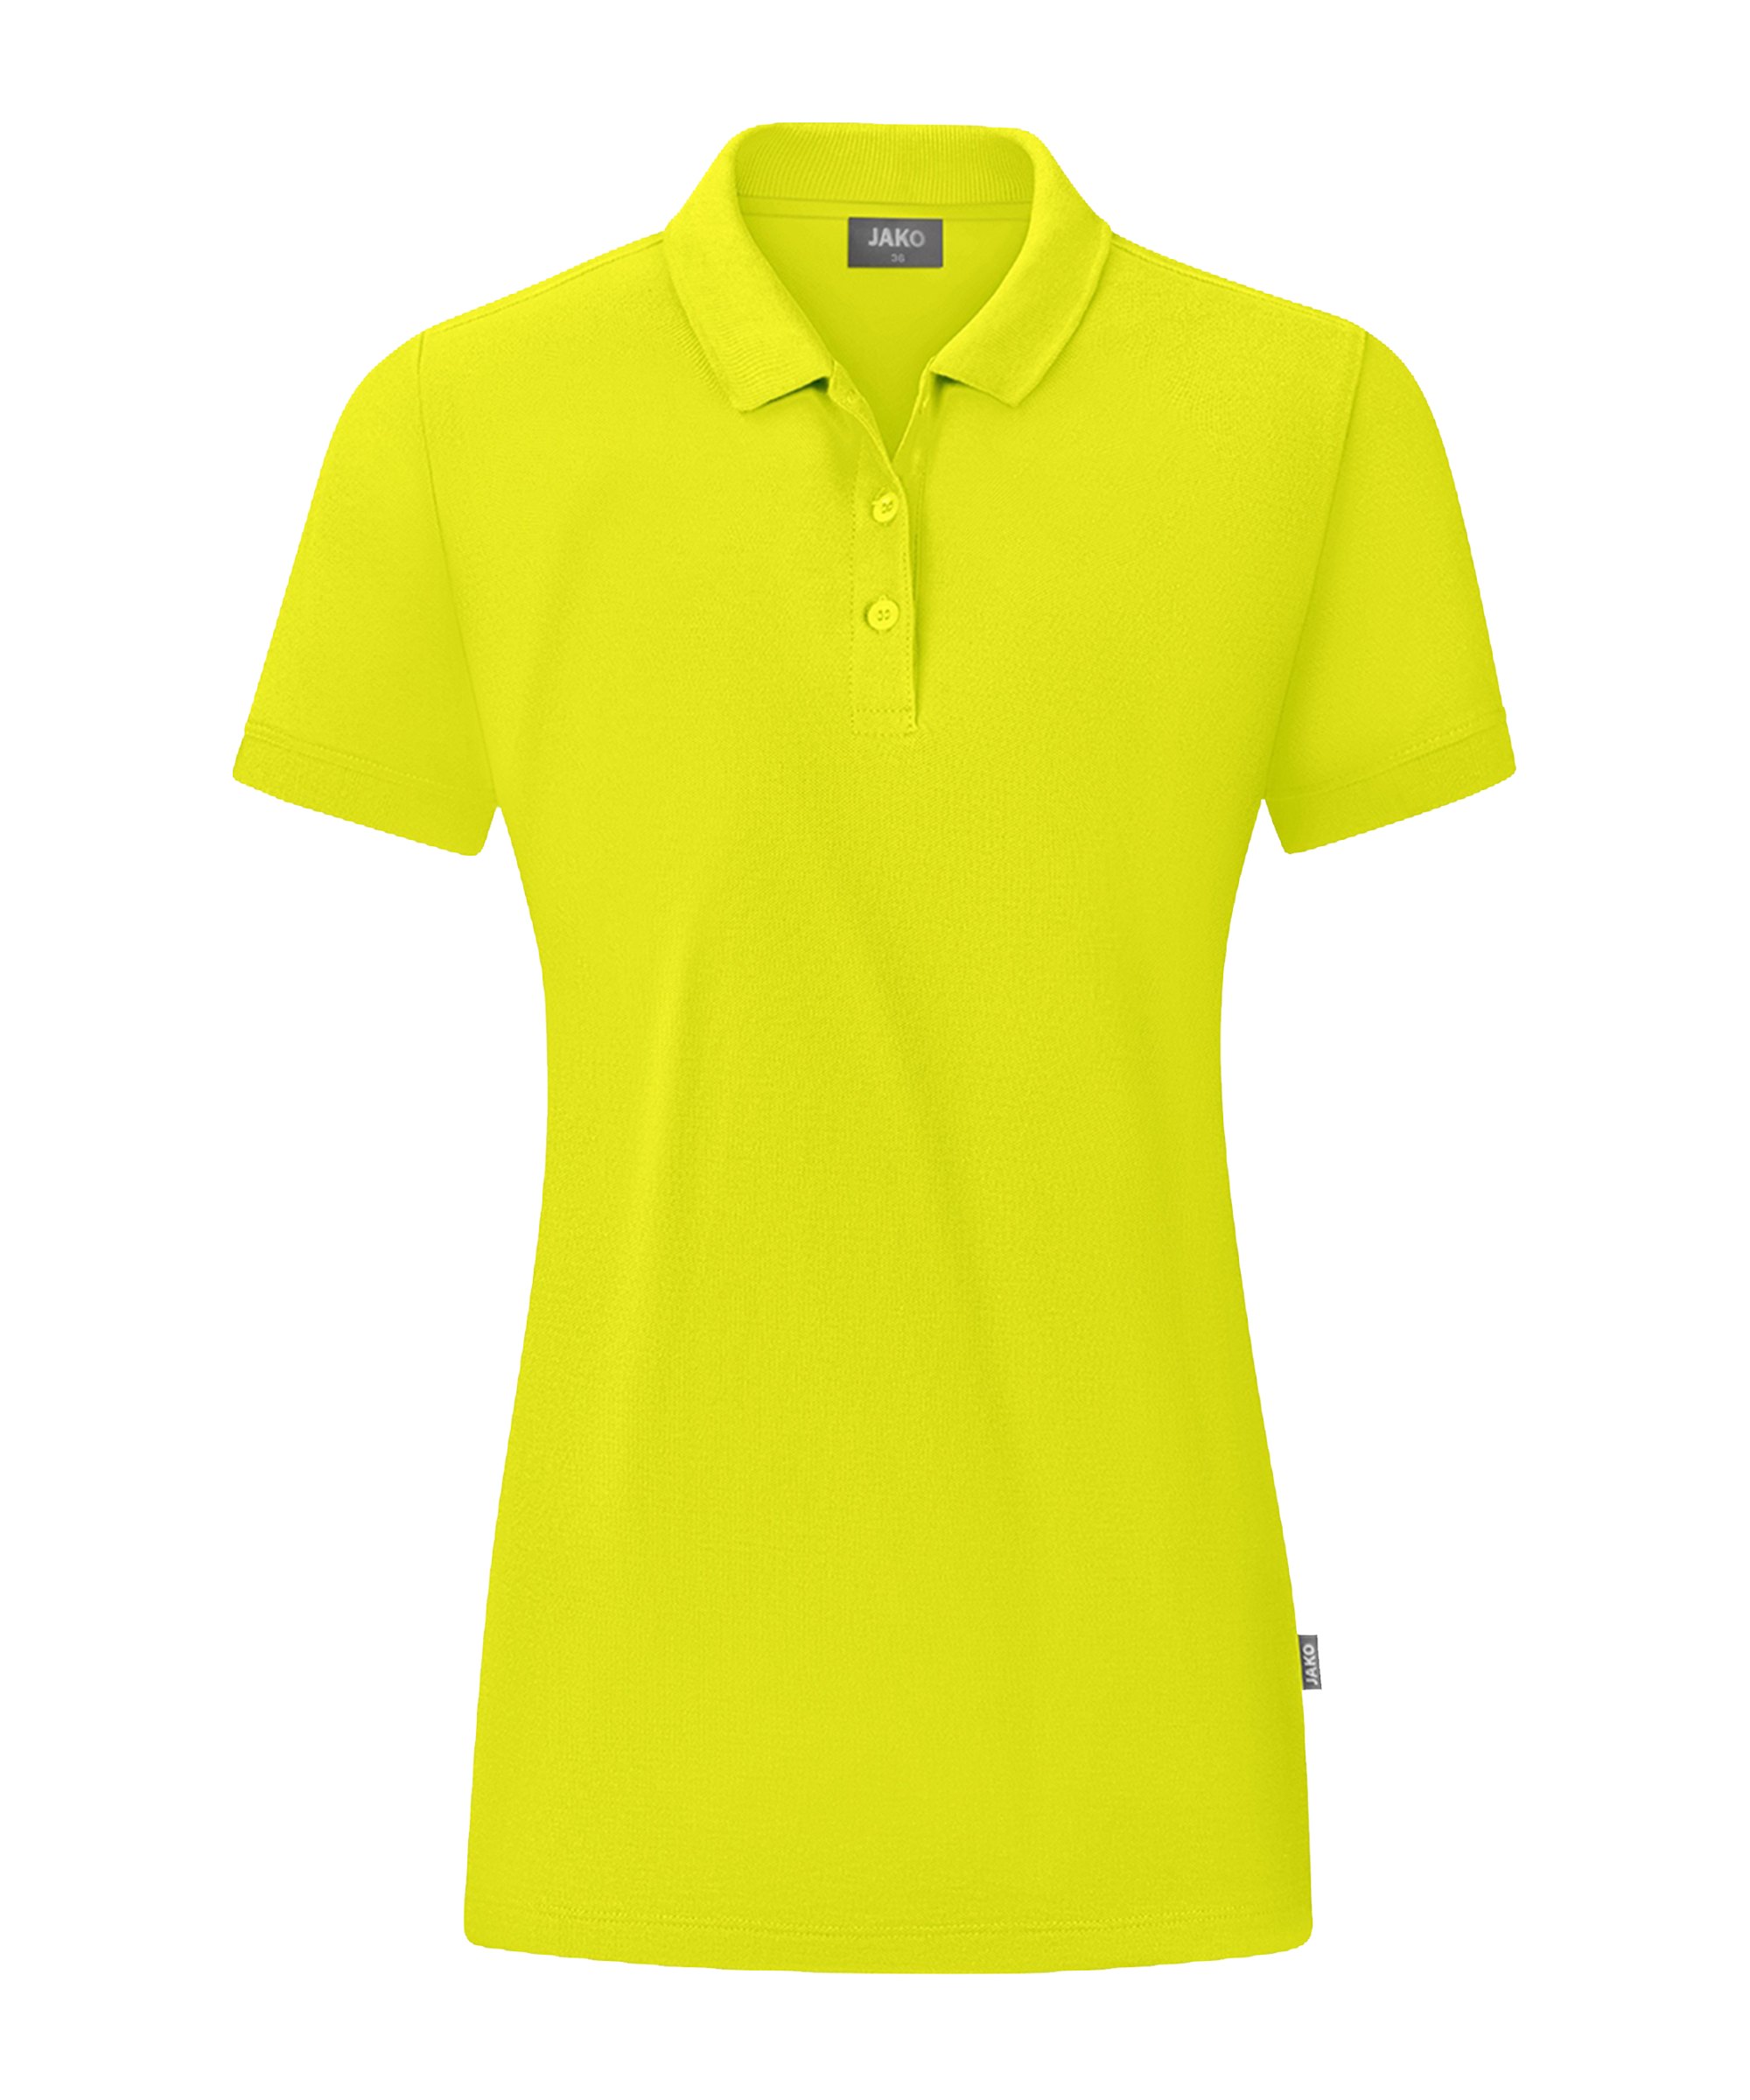 JAKO Organic Polo Shirt Damen Grün F270 - gruen